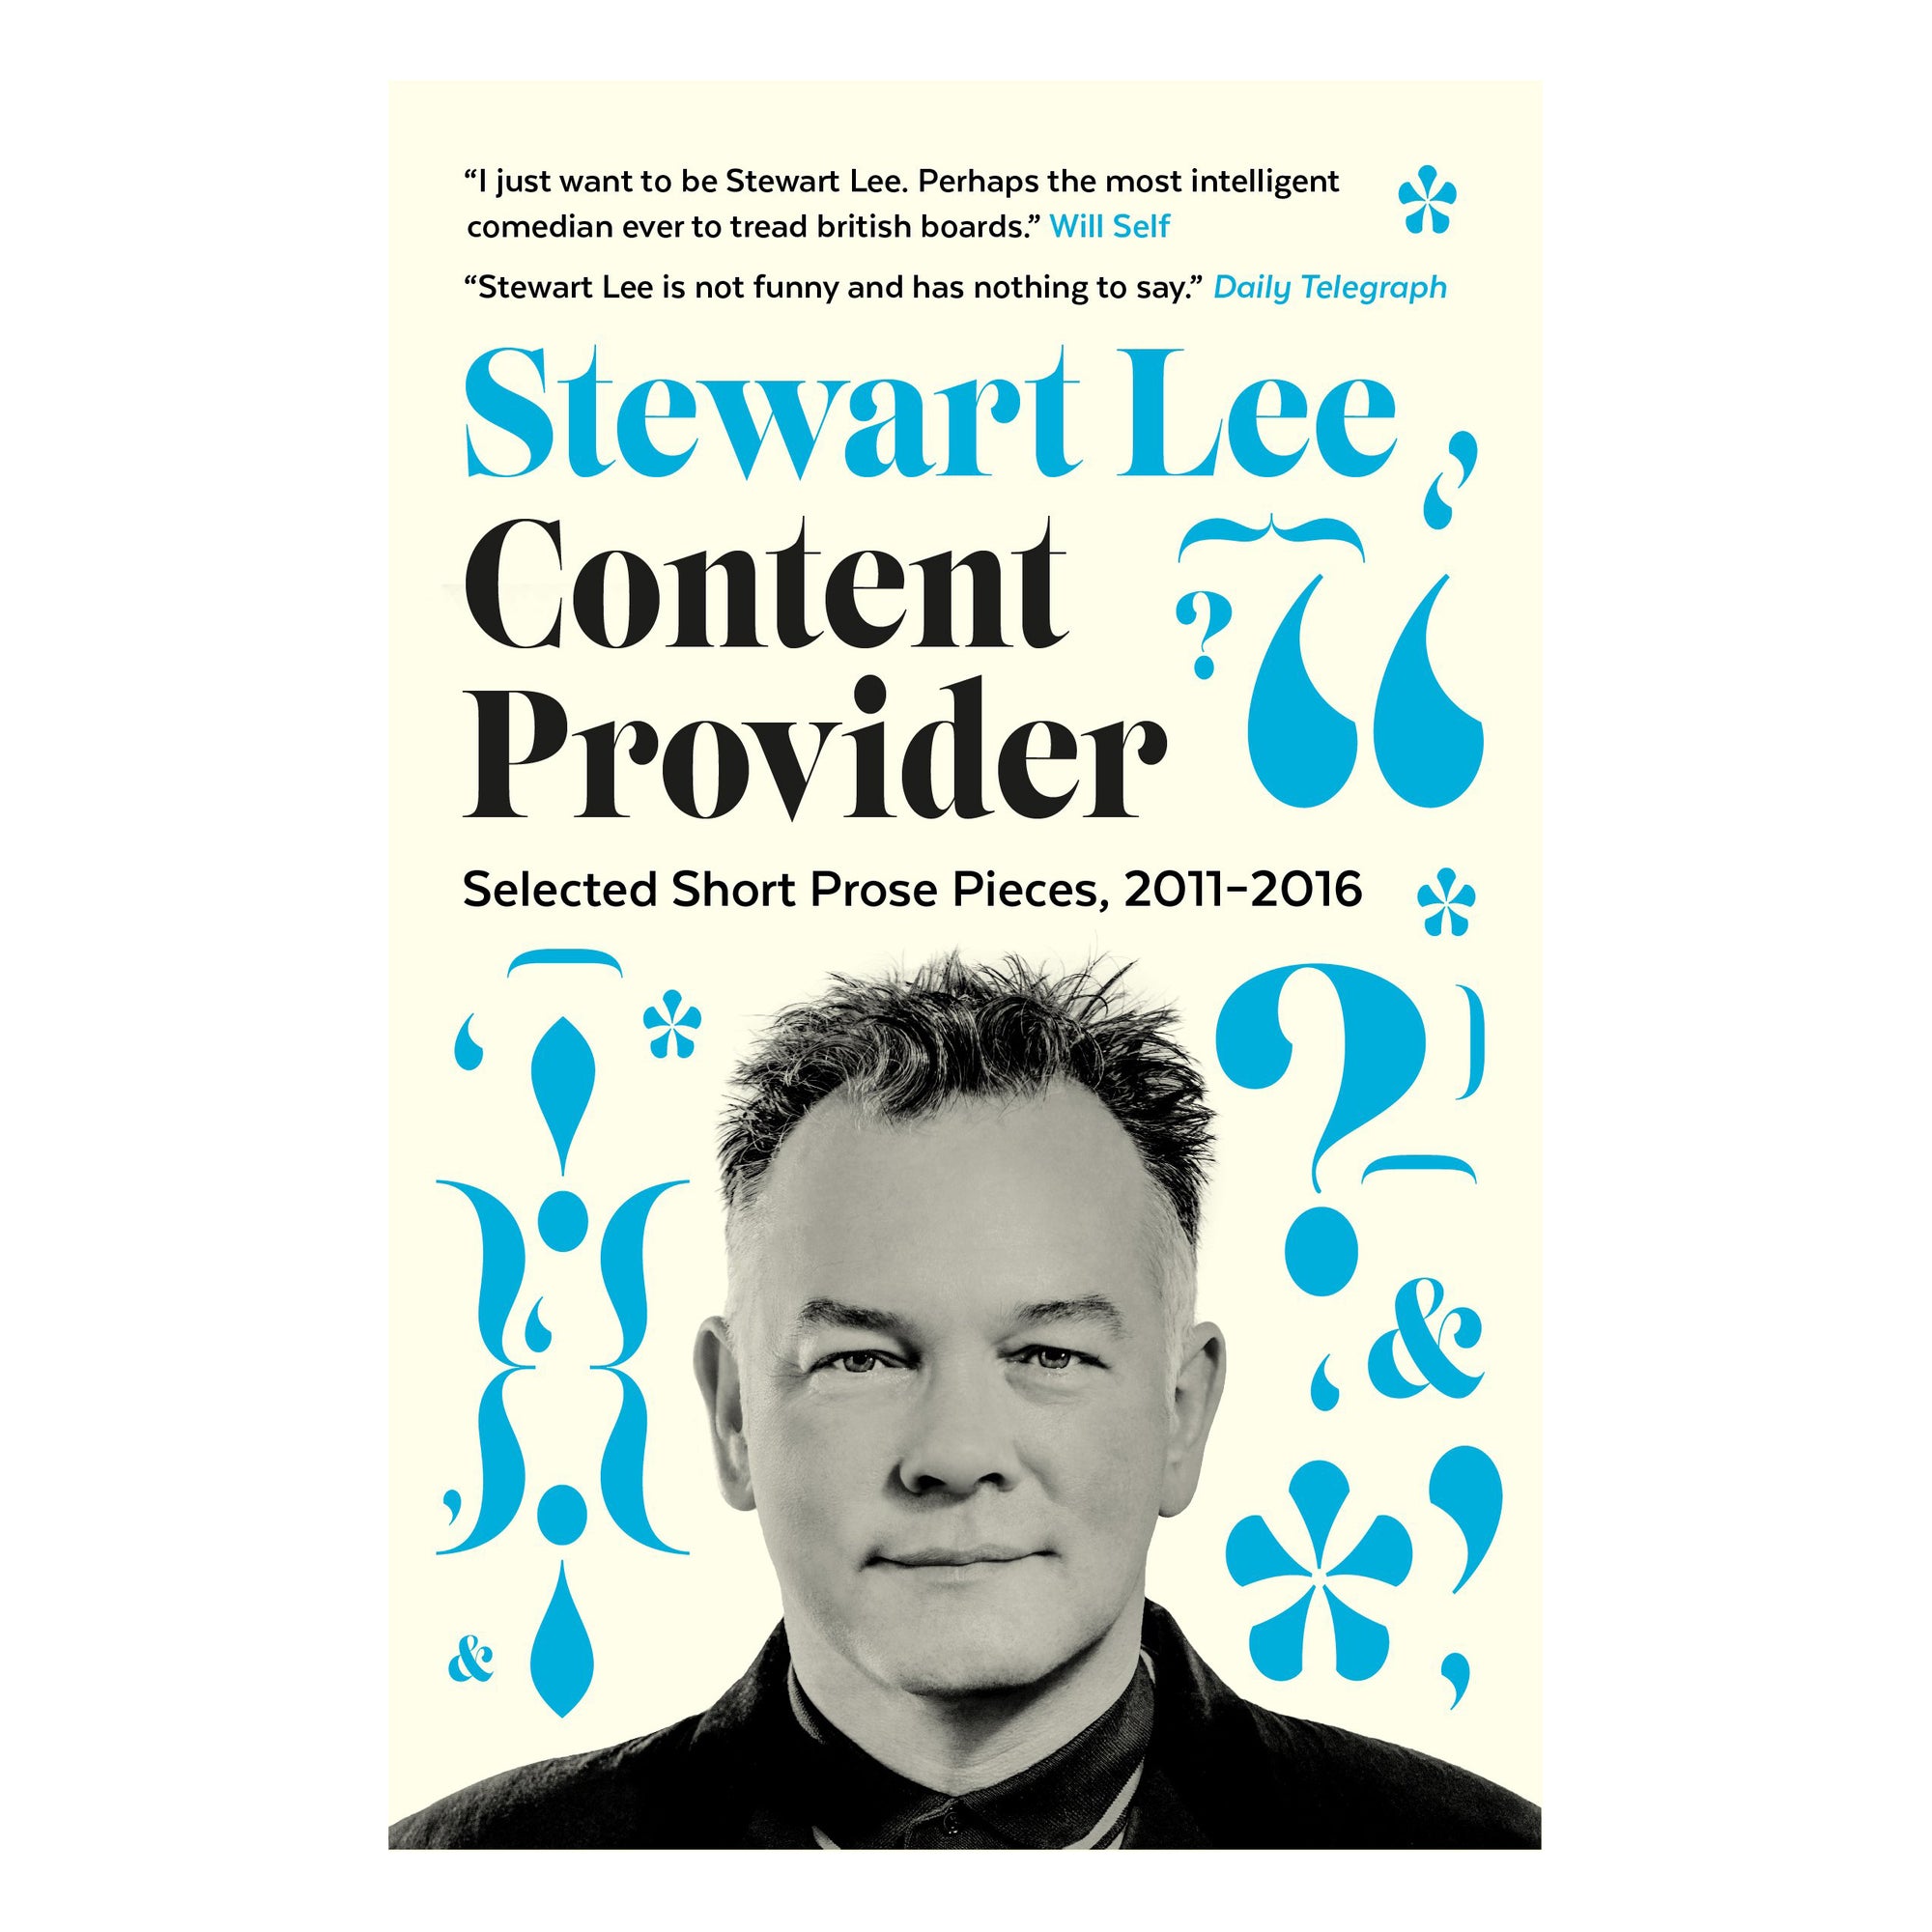 Stewart Lee Content Provider